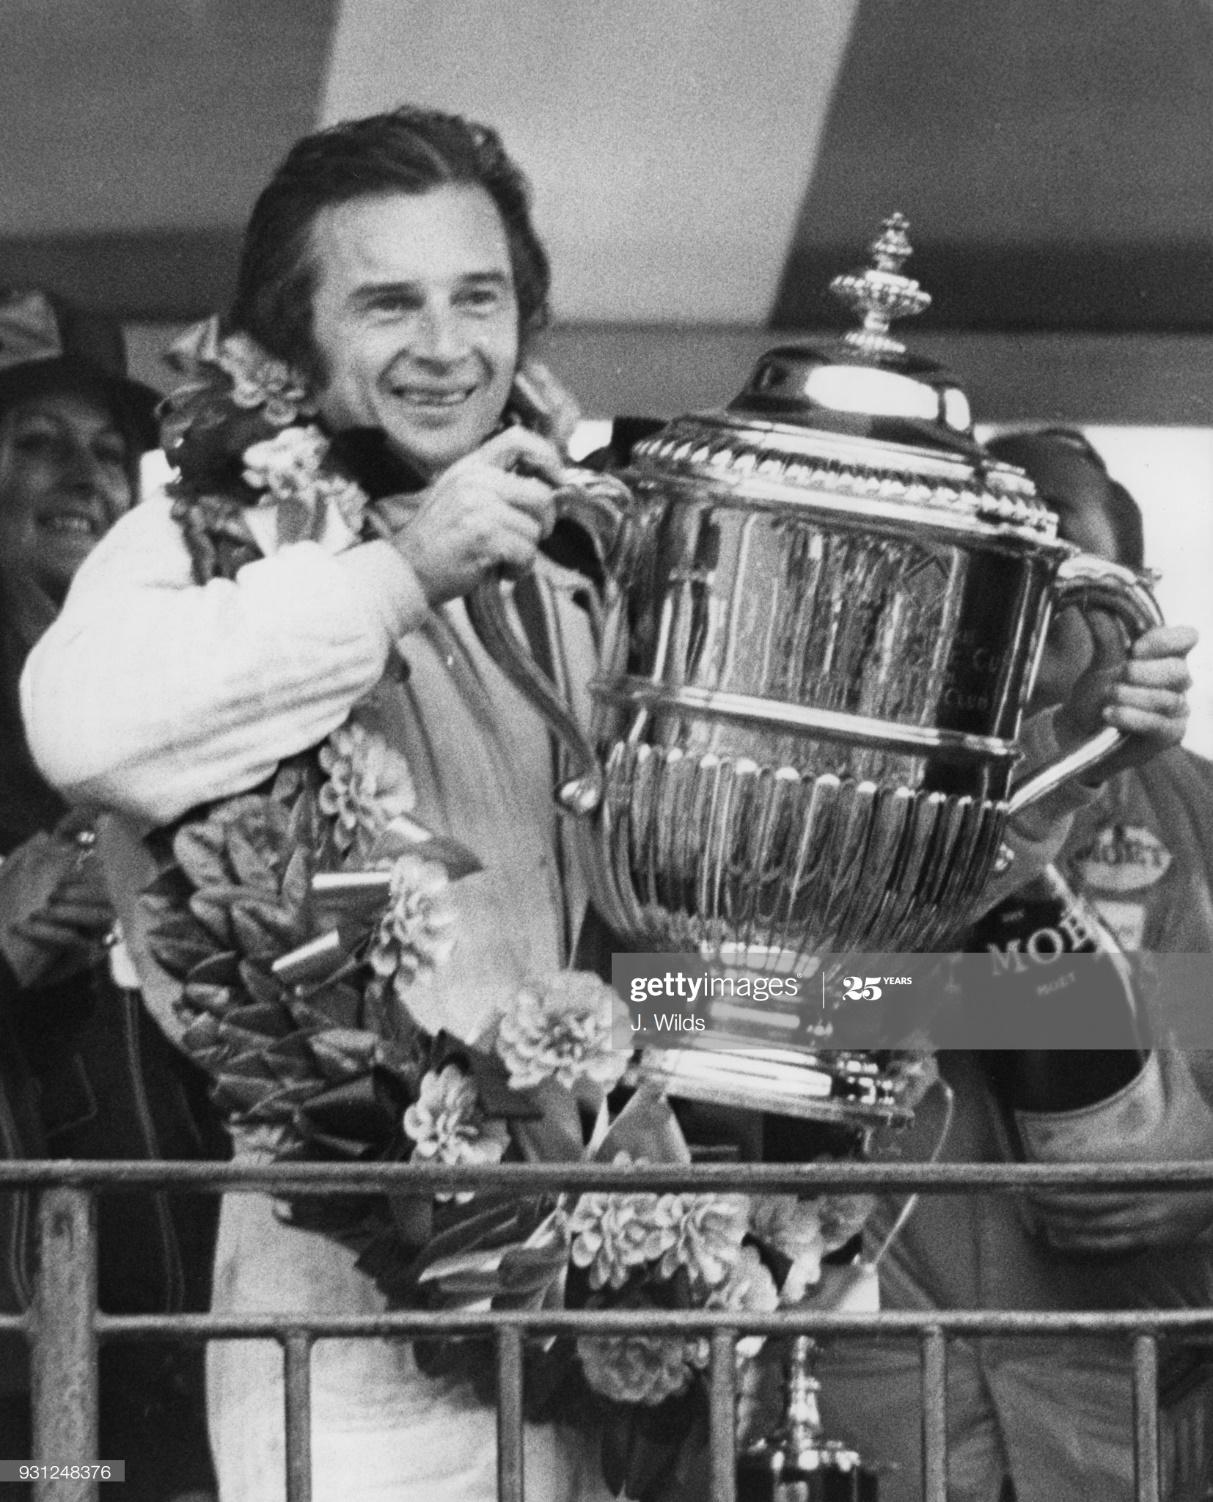 Jean Pierre Beltoise with a trophy.